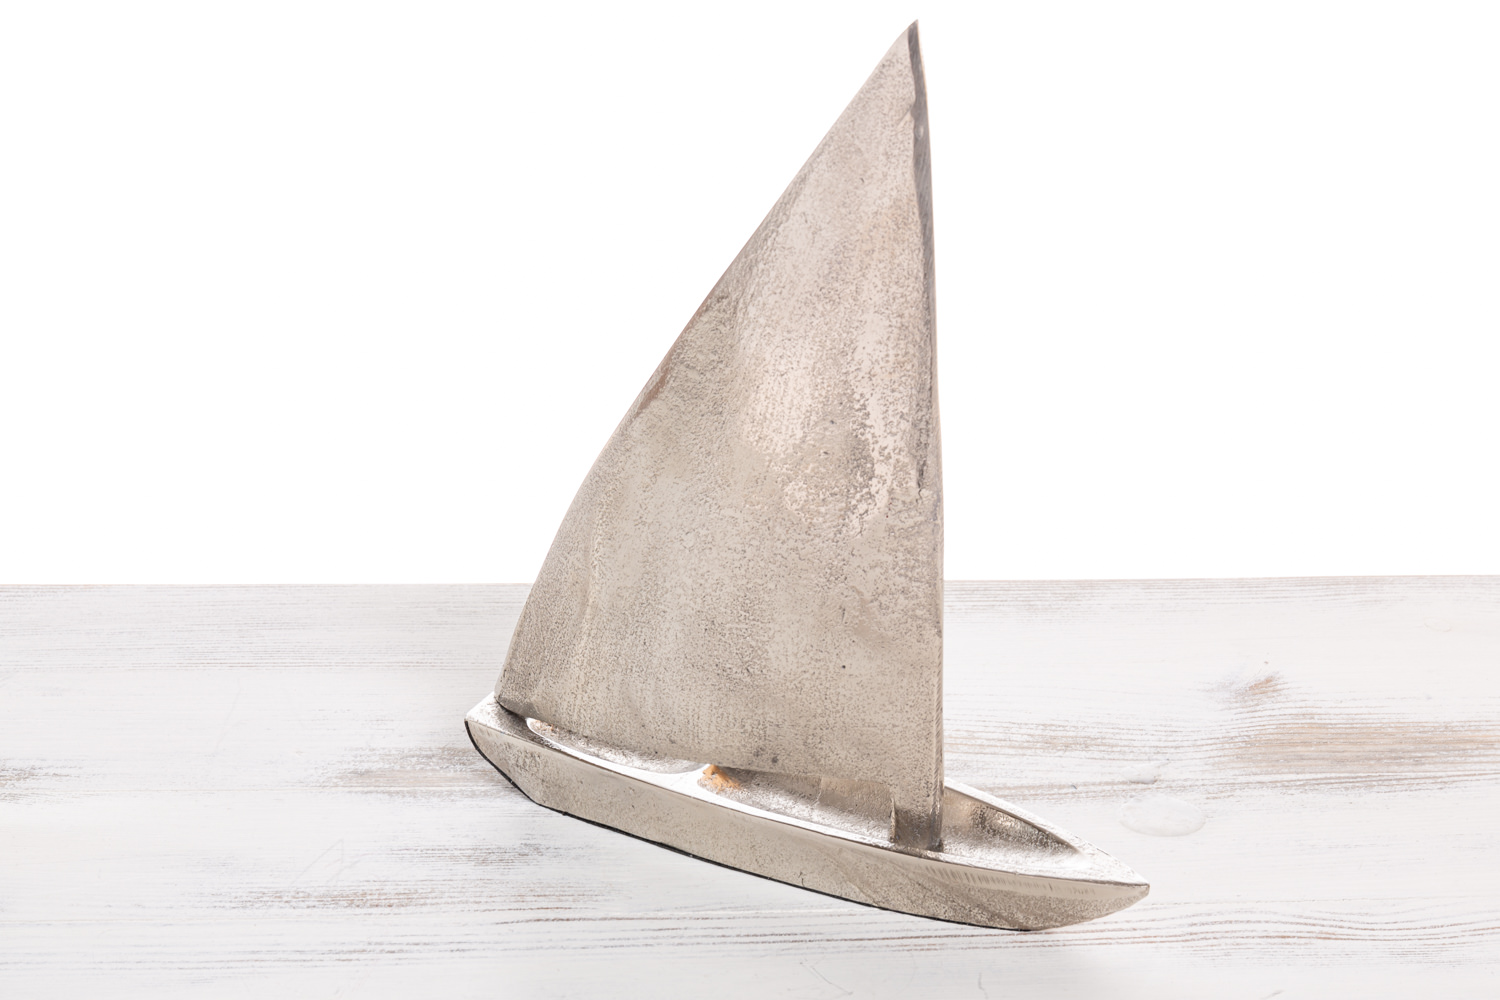 Boot kleines Segelschiffchen 11 x19cm flach Metal auf Holzsockel Deko maritim 